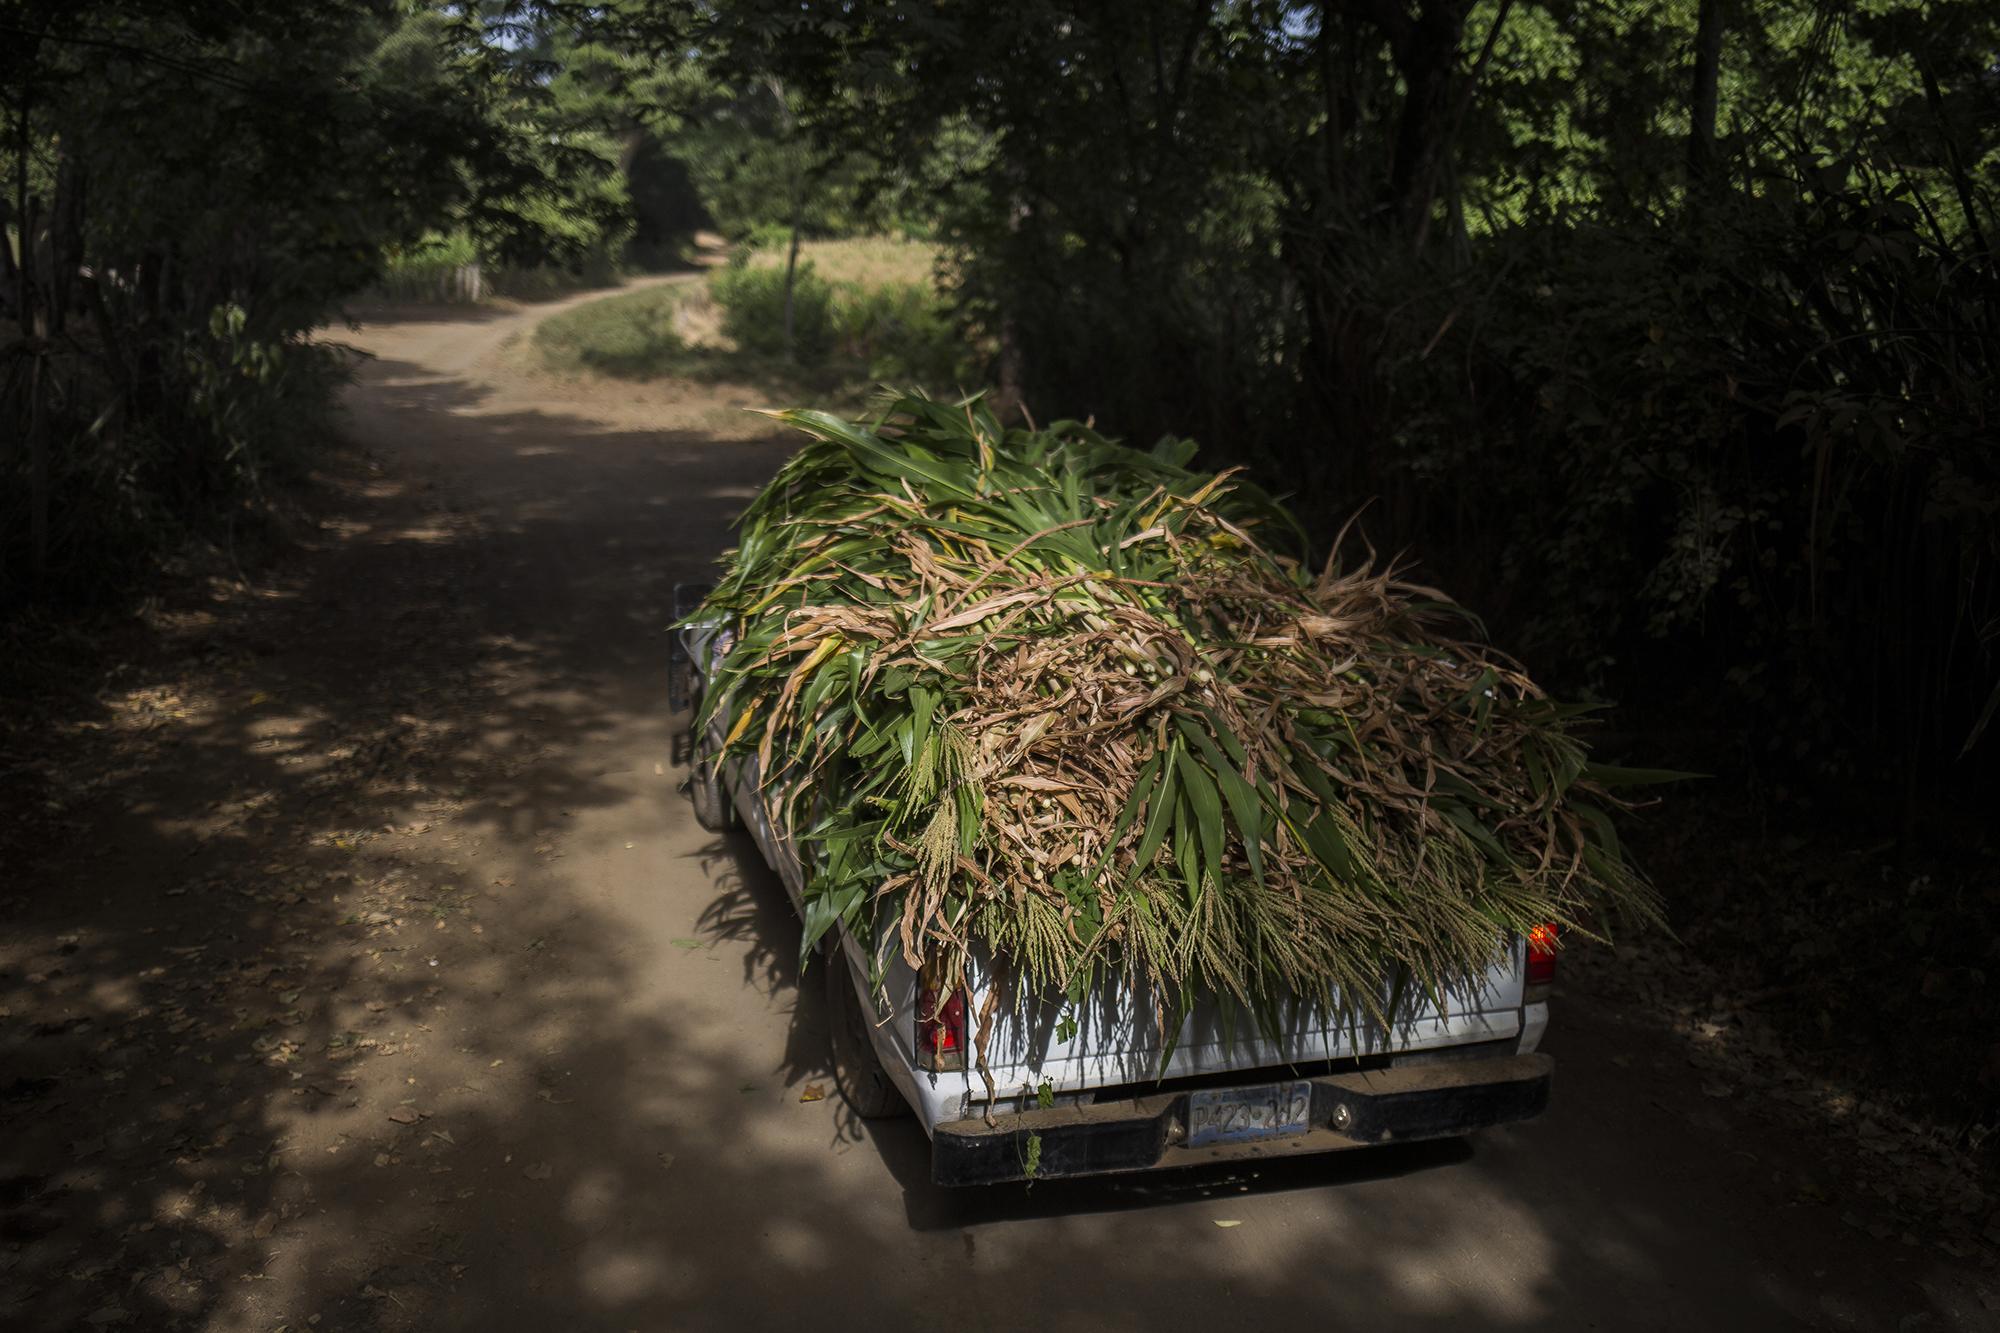 Un camión transporta zacate de milpa que fue retirado de los campos de cultivos, en el caserío Las Pavas, del municipio de Jucuapa, Usulután. Foto de El Faro, por Víctor Peña.